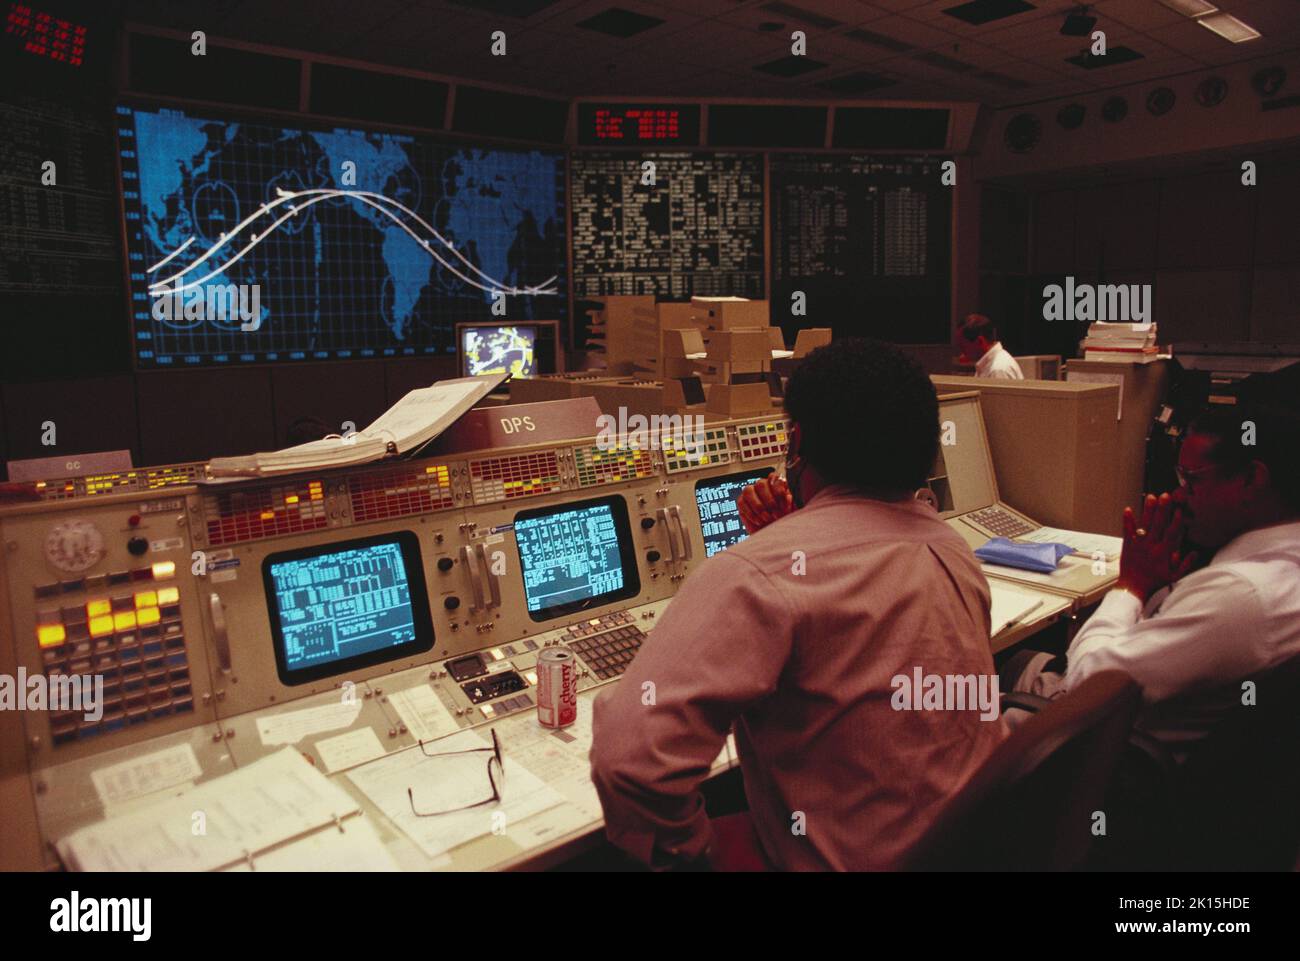 Découvrez la salle de contrôle de la mission de la NASA au Johnson Space Center, également connu par son panneau d'appel, « Houston ».Photographie vers 1989. Banque D'Images